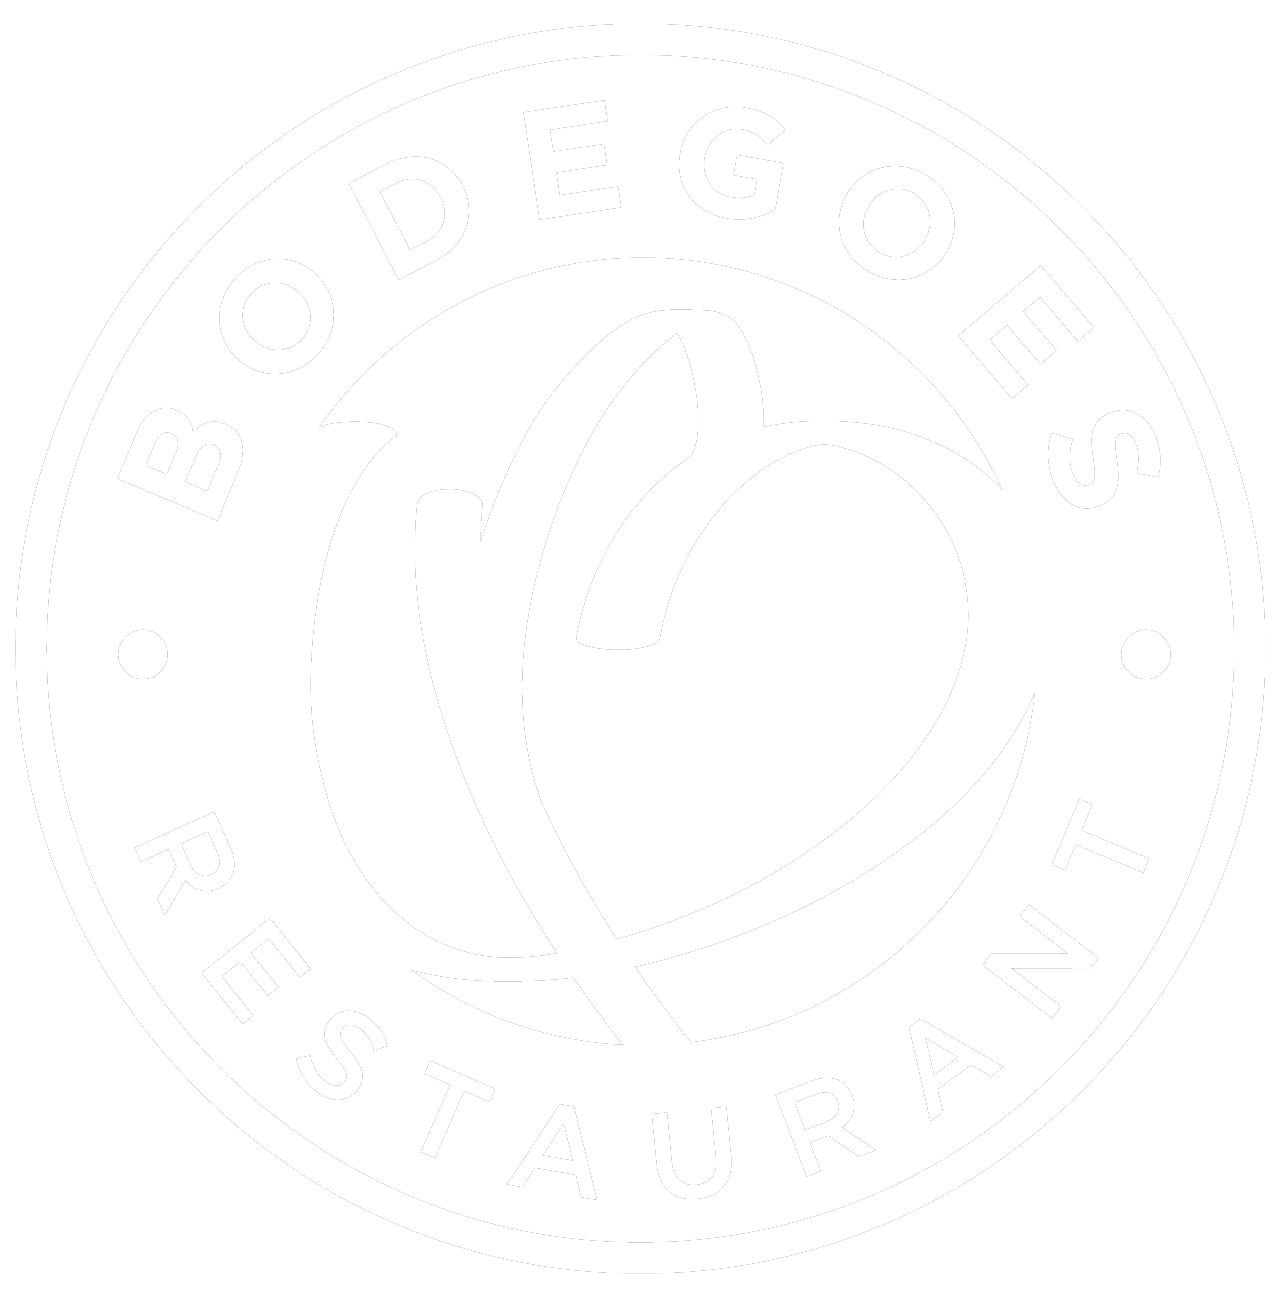 Bodegoes